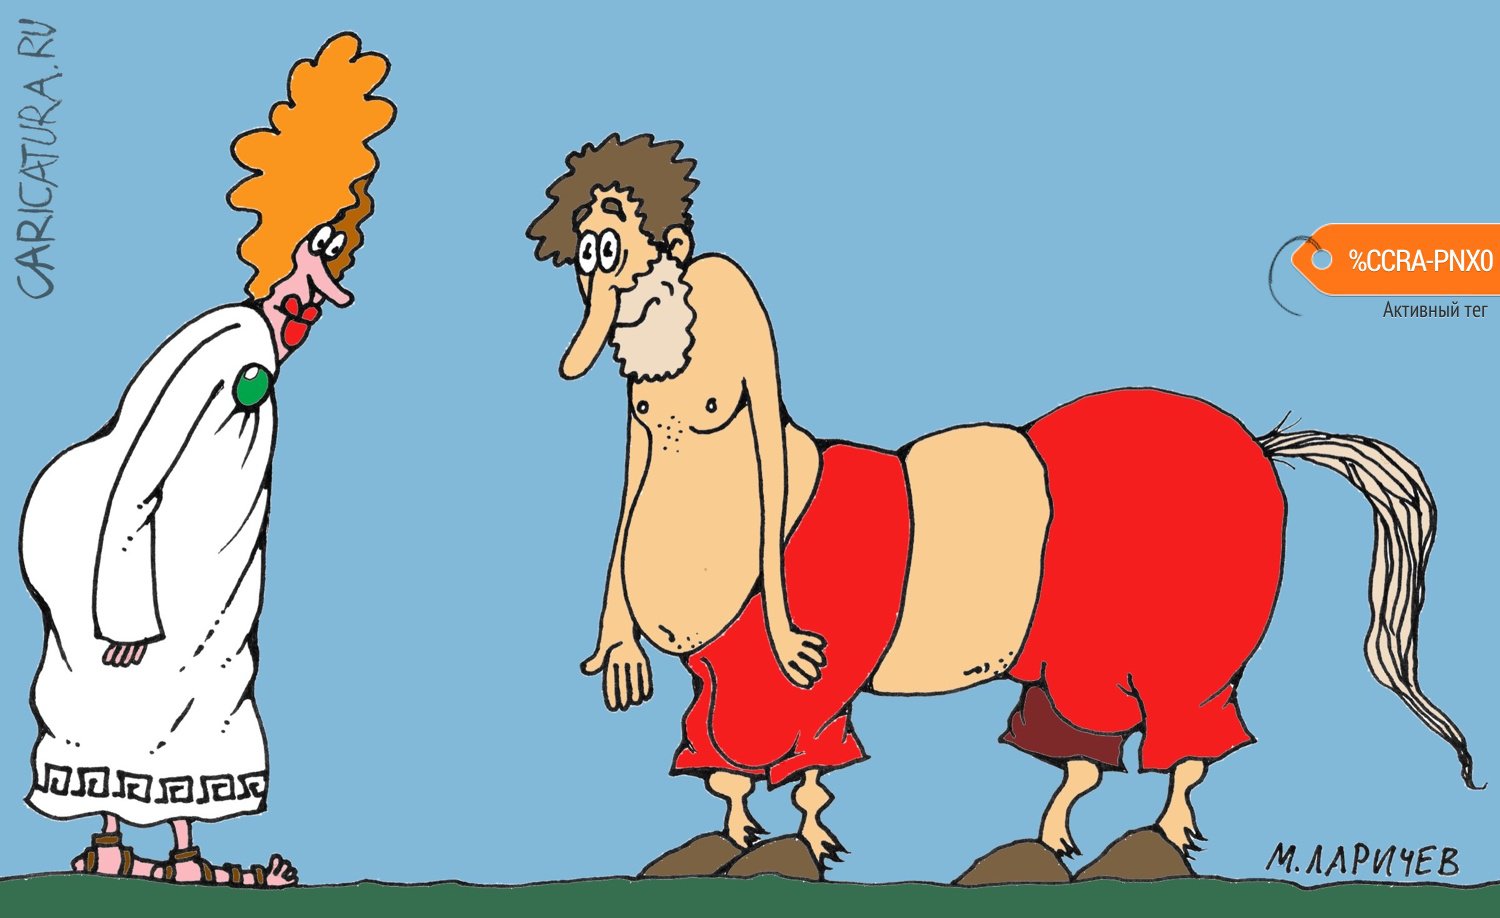 Карикатура "Старый конь...", Михаил Ларичев